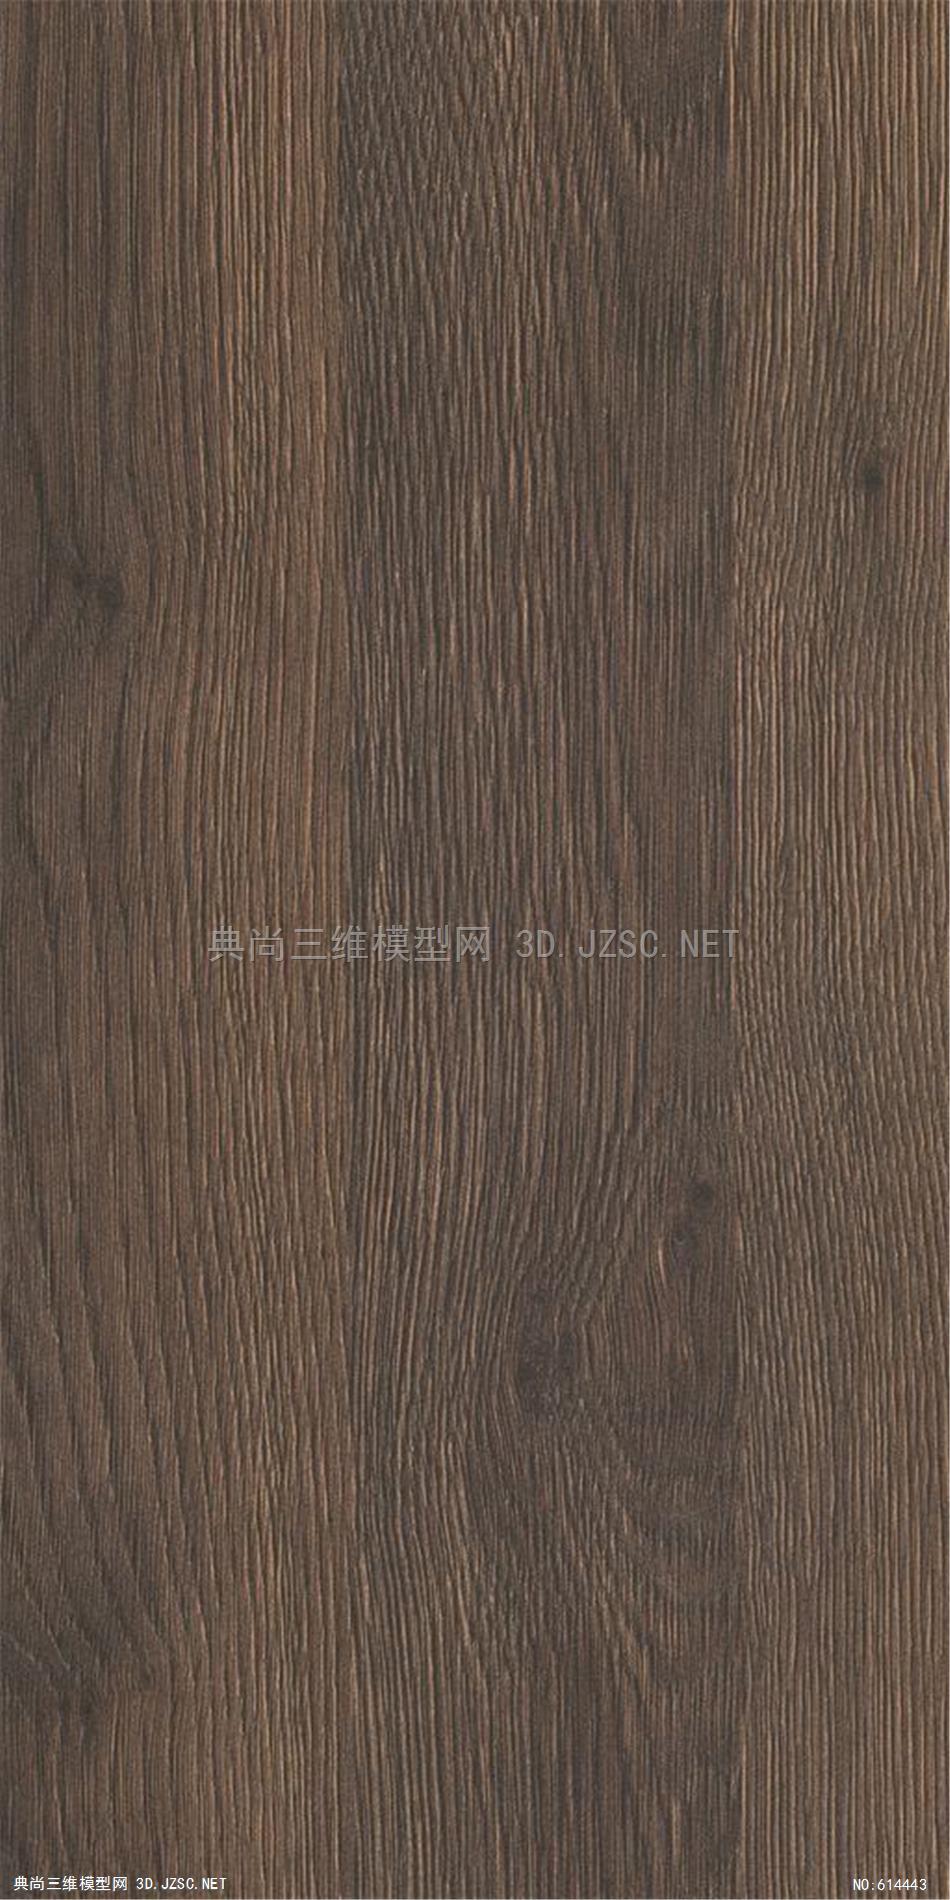 木饰面 木纹 木材  高清材质贴图 (302)